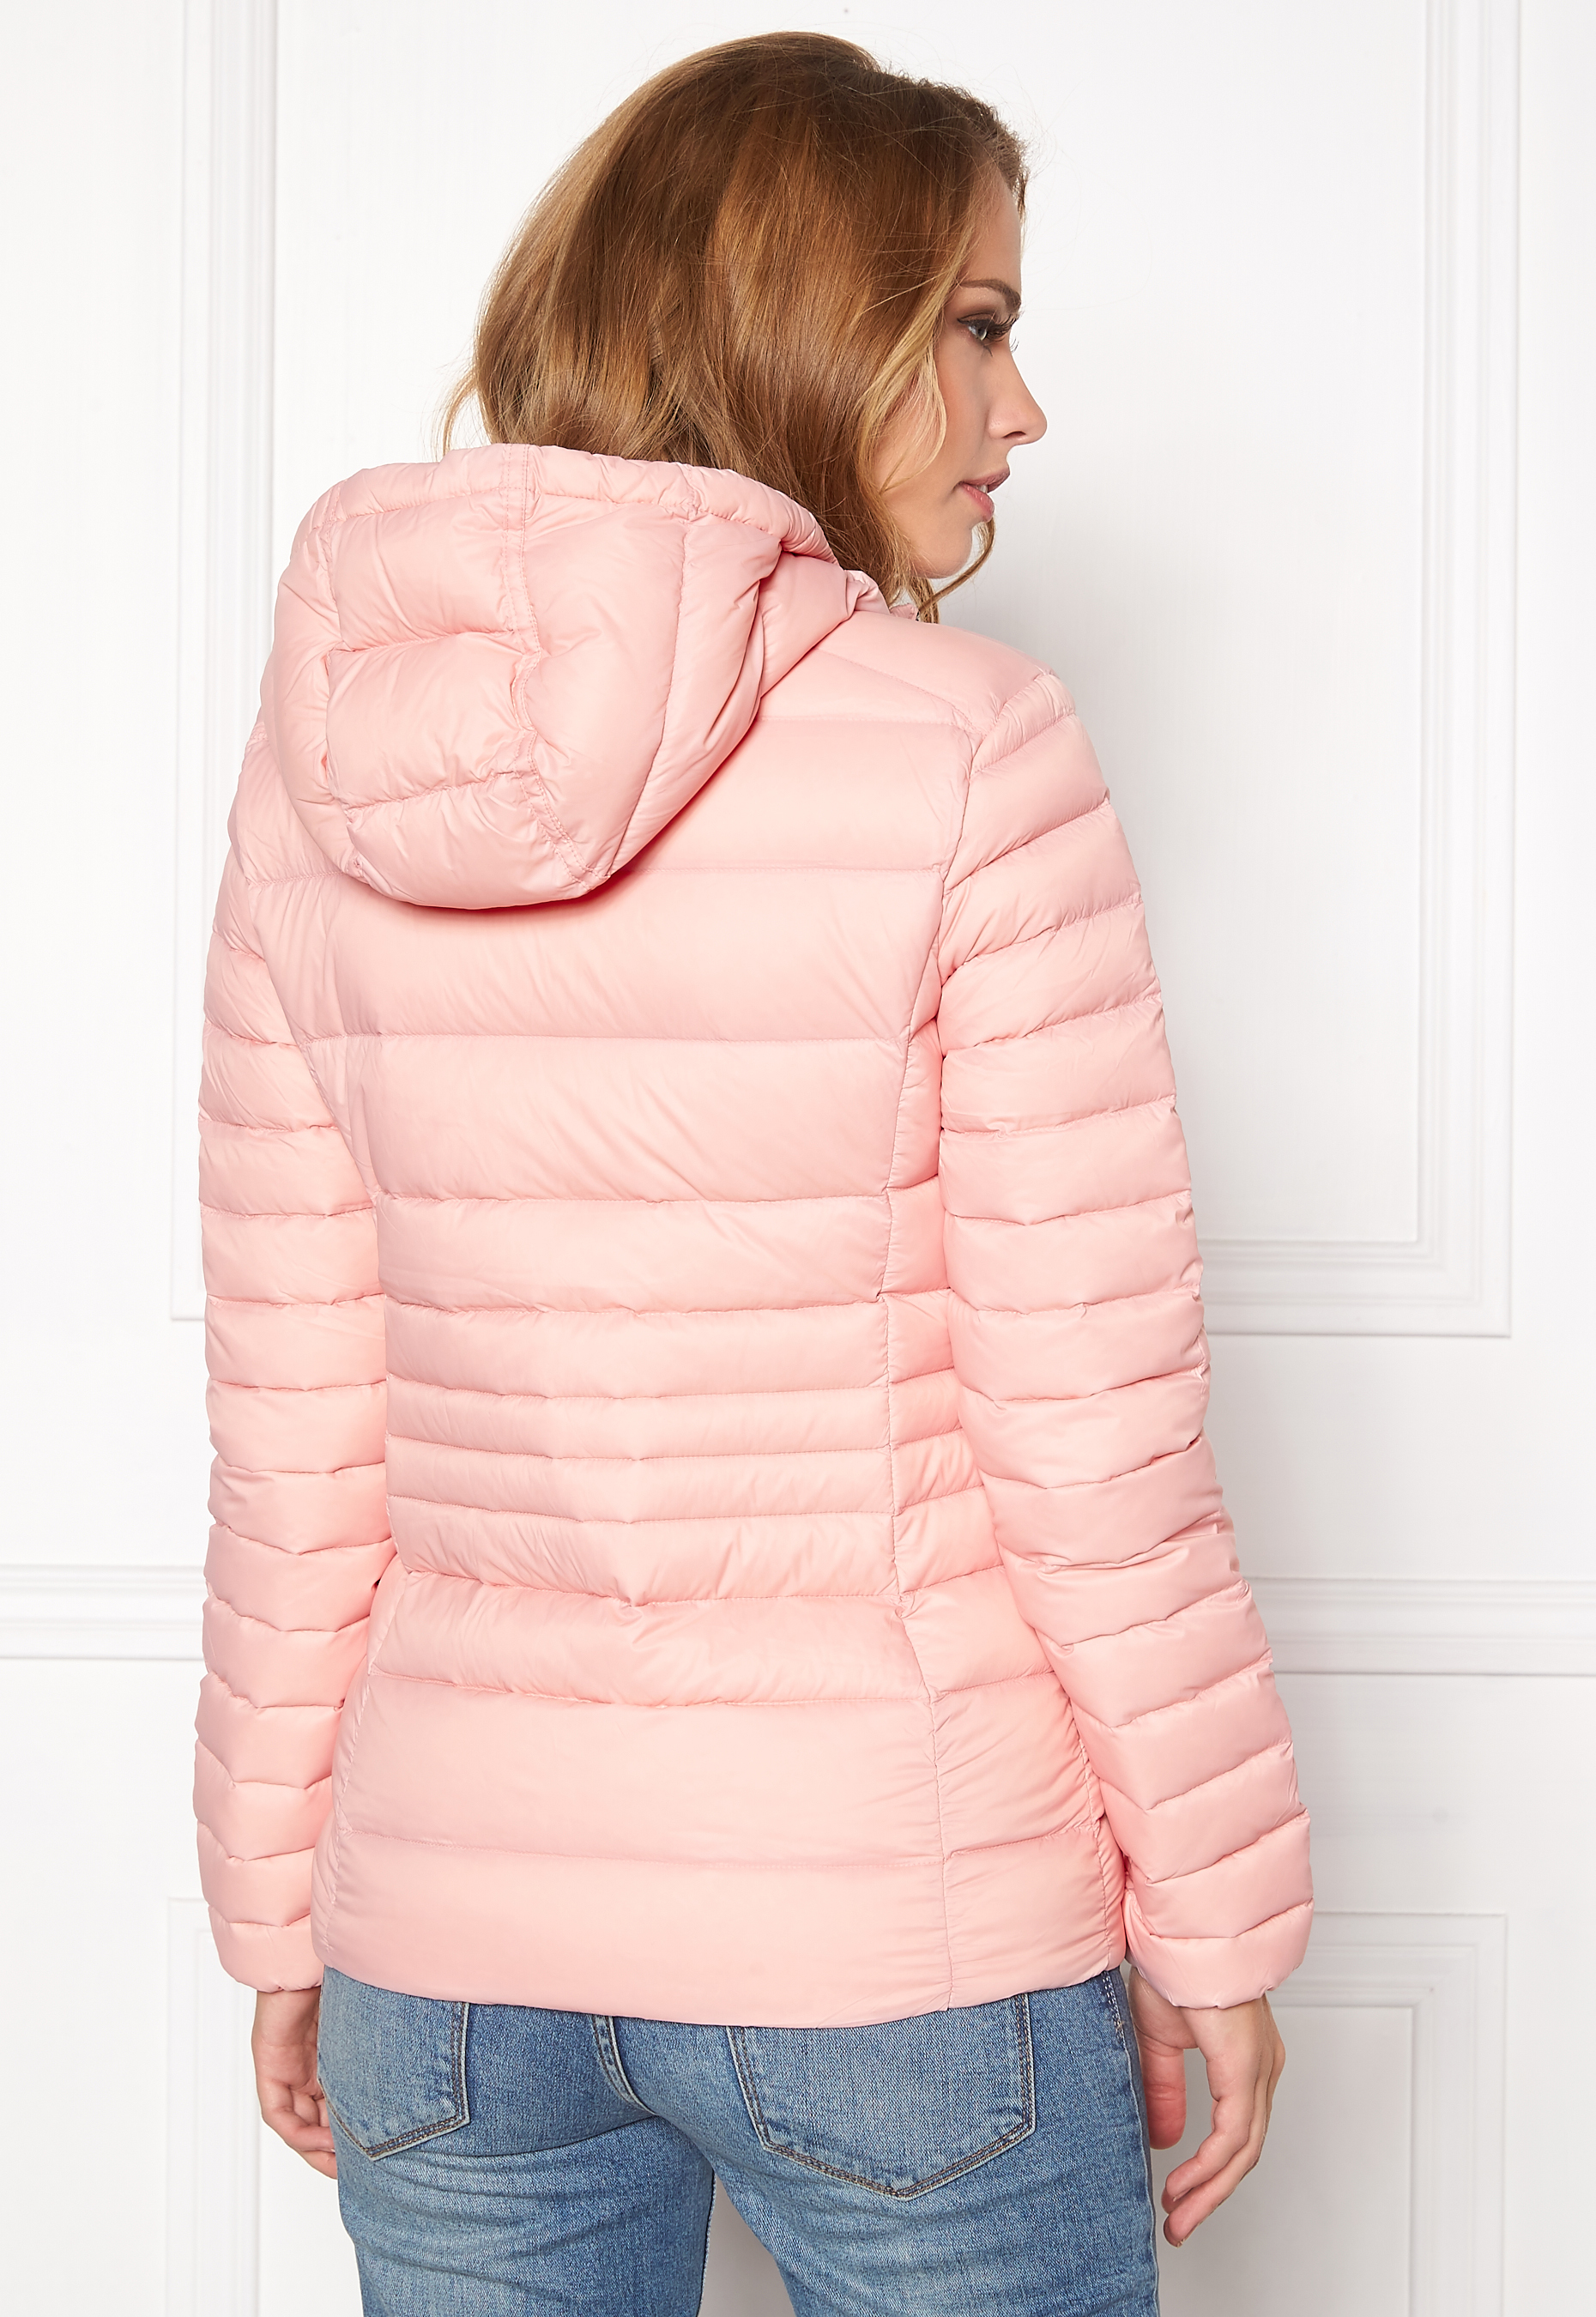 pink tommy hilfiger denim jacket